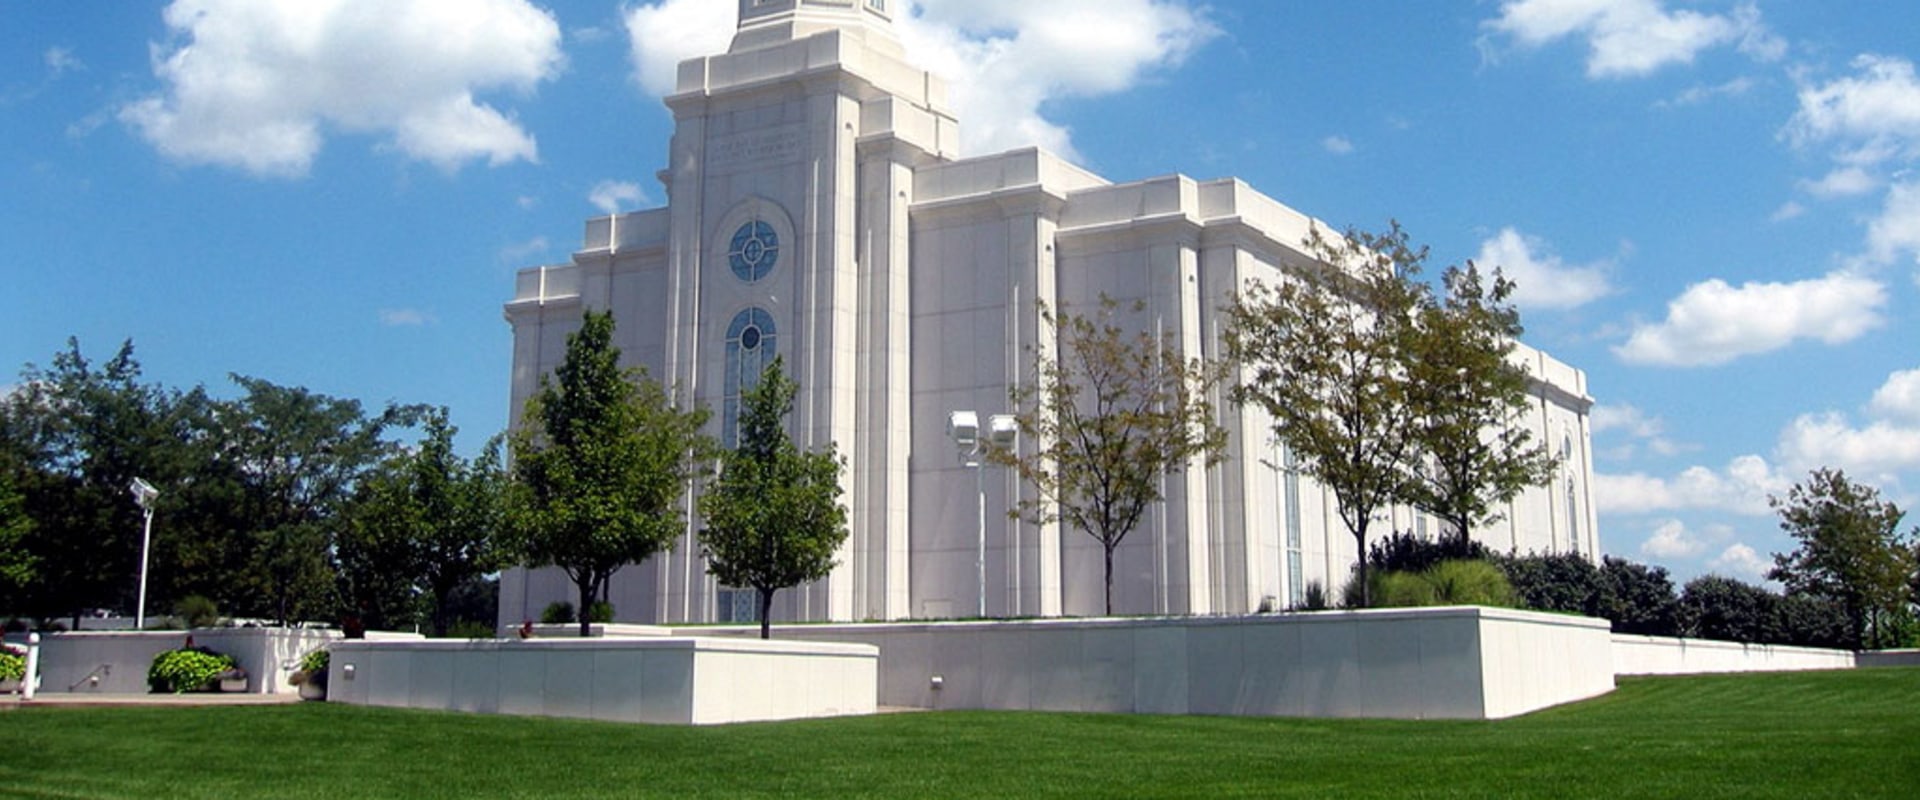 Religious Institutions in St. Louis, Missouri